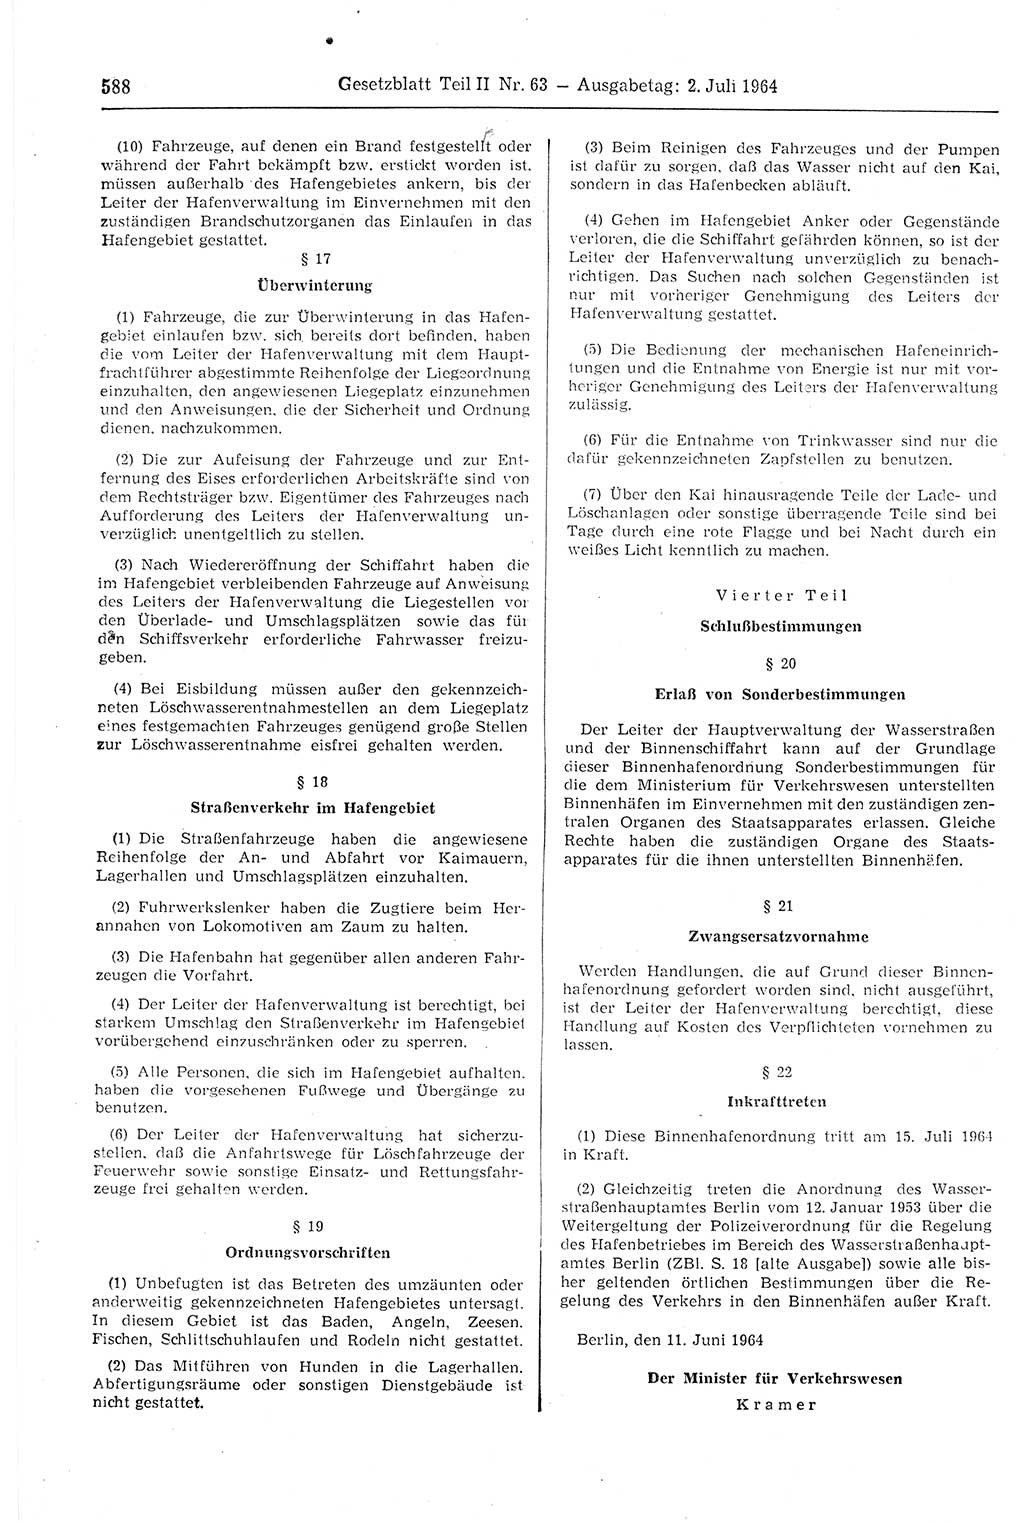 Gesetzblatt (GBl.) der Deutschen Demokratischen Republik (DDR) Teil ⅠⅠ 1964, Seite 588 (GBl. DDR ⅠⅠ 1964, S. 588)